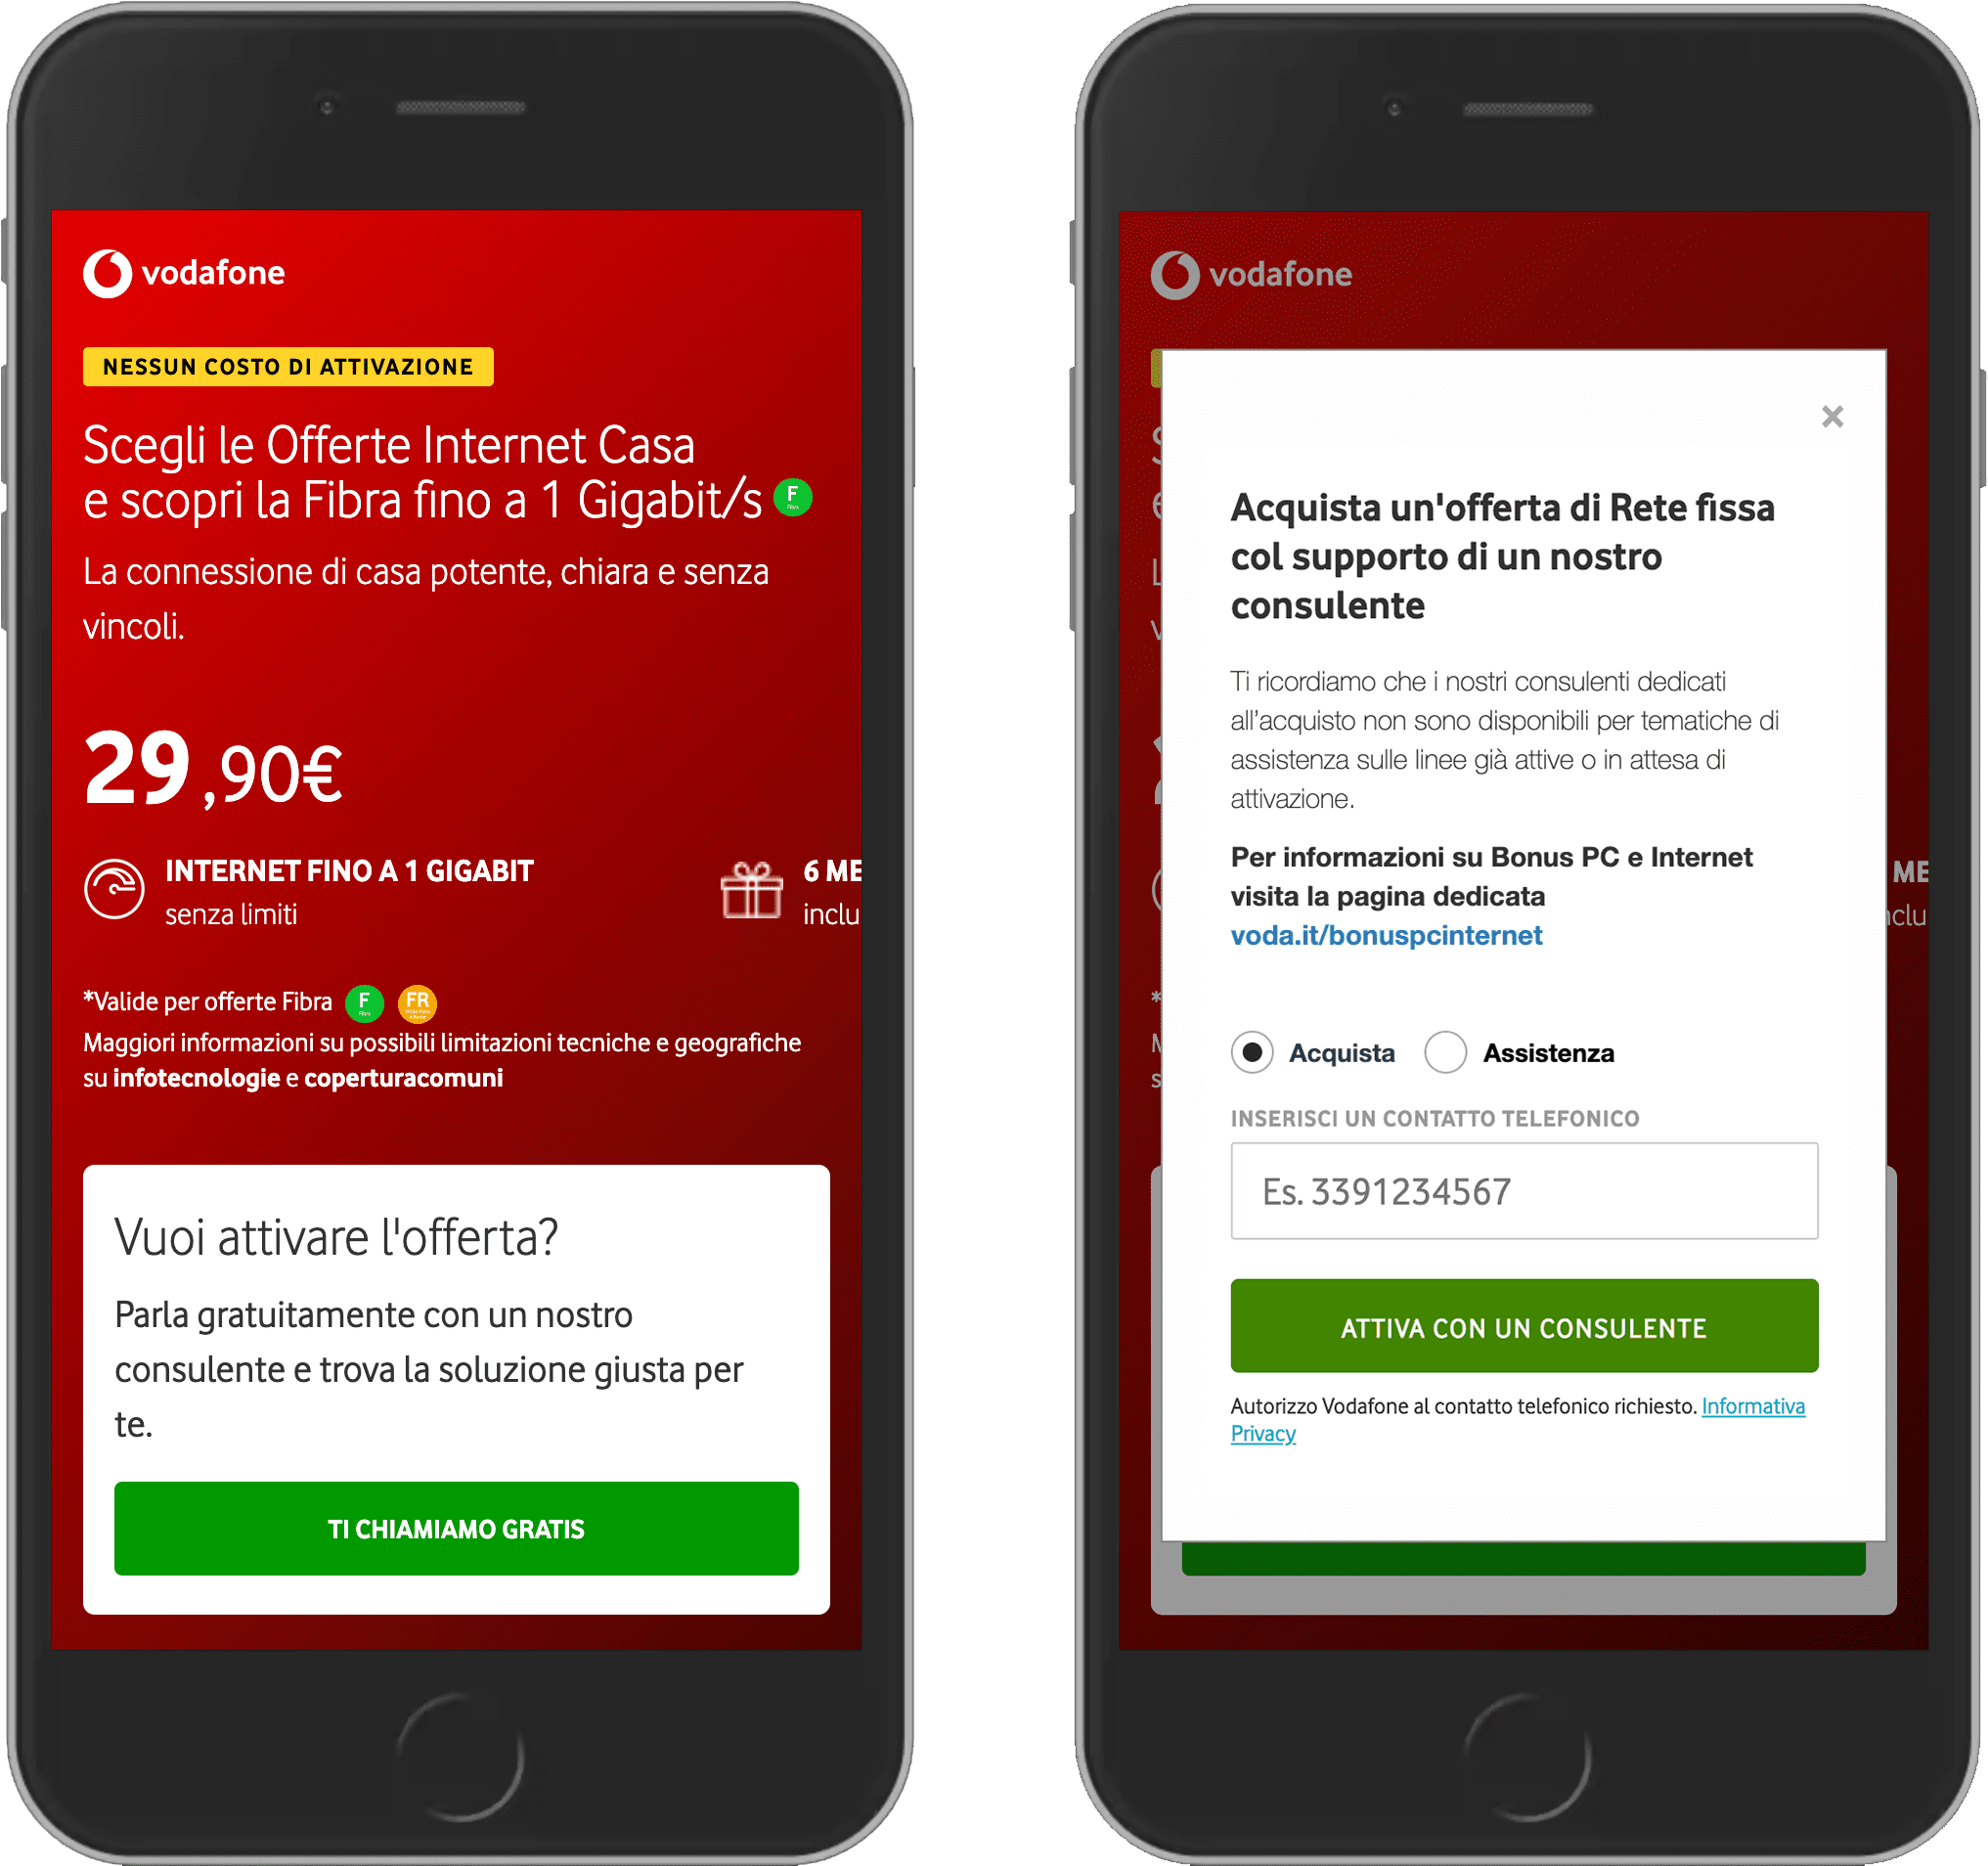 Vodafone वेबसाइट के दो स्क्रीनशॉट.